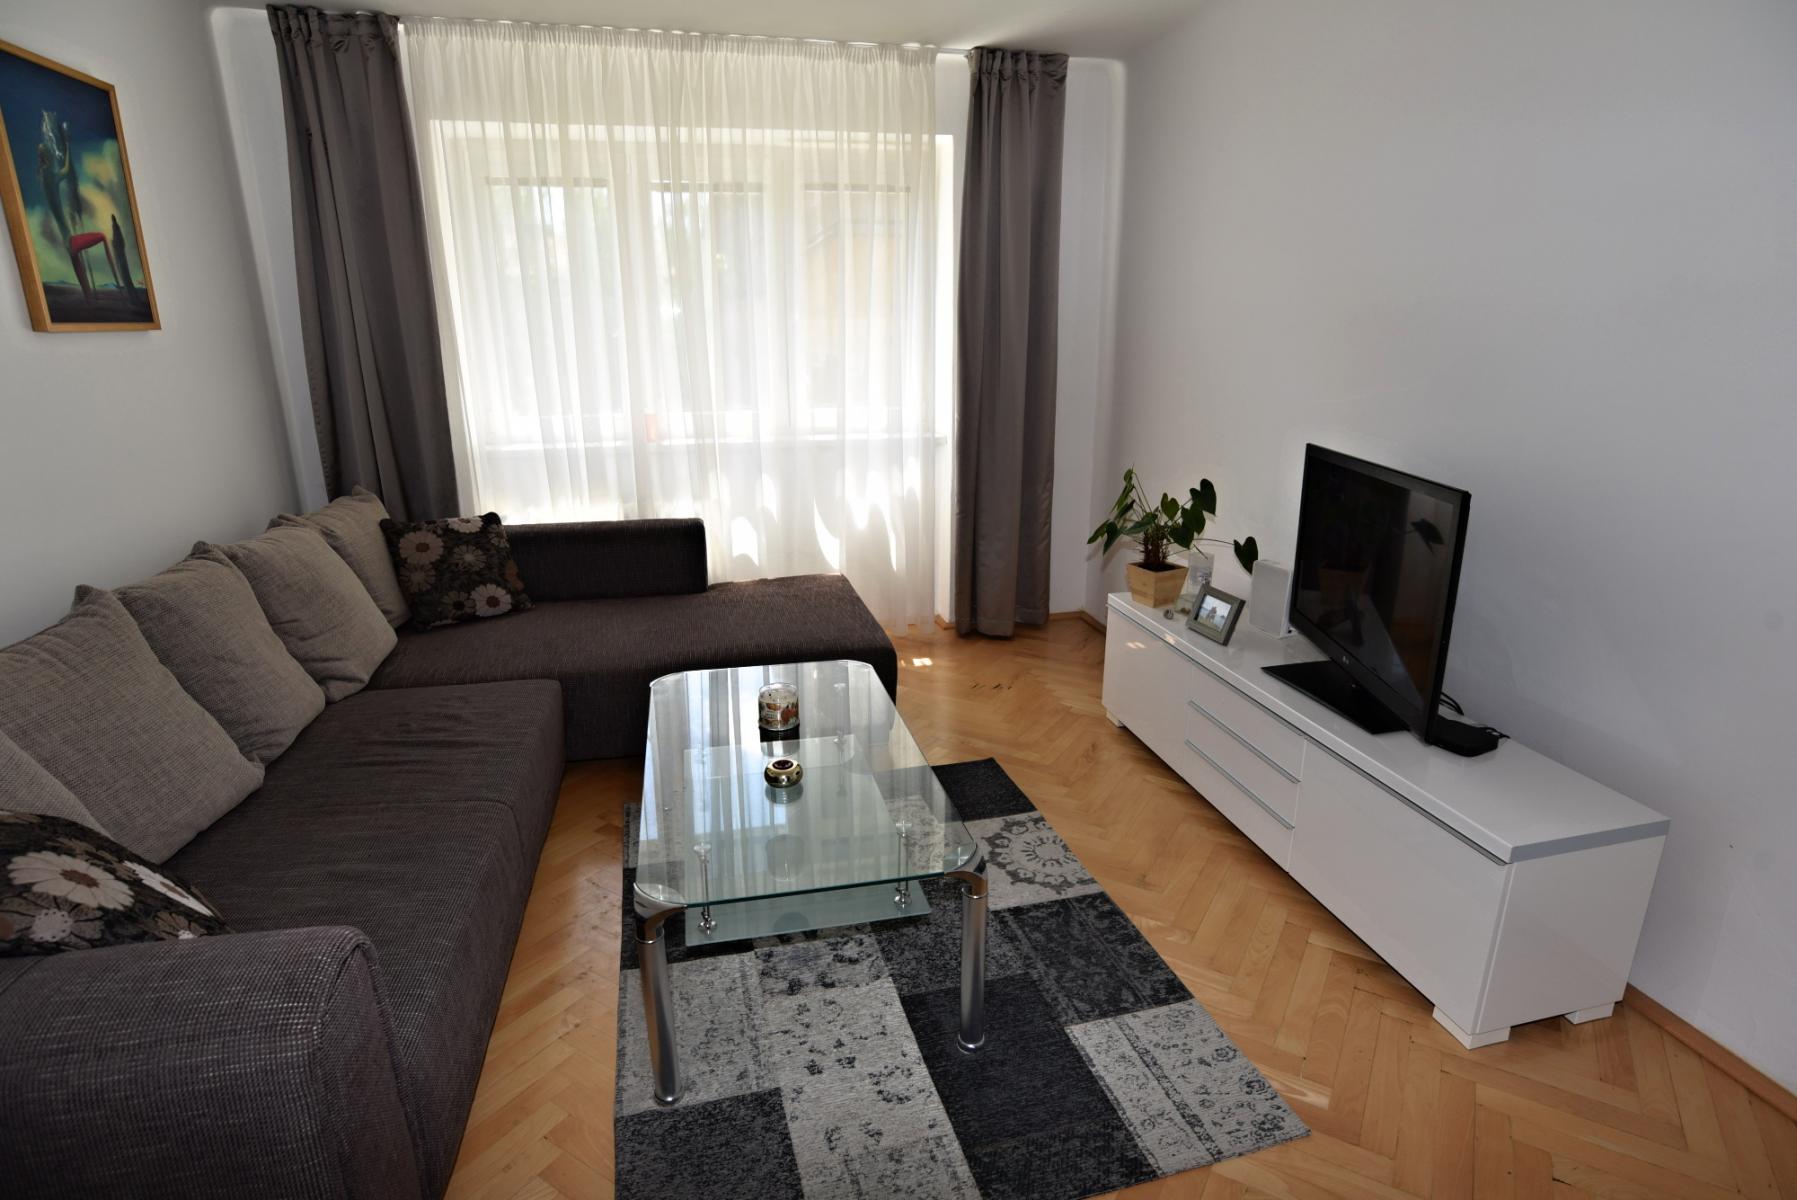 Exkluzivně nabízíme k prodeji slunný a prostorný byt 2+1/B,, 65m2, cihla v centru Kladna.